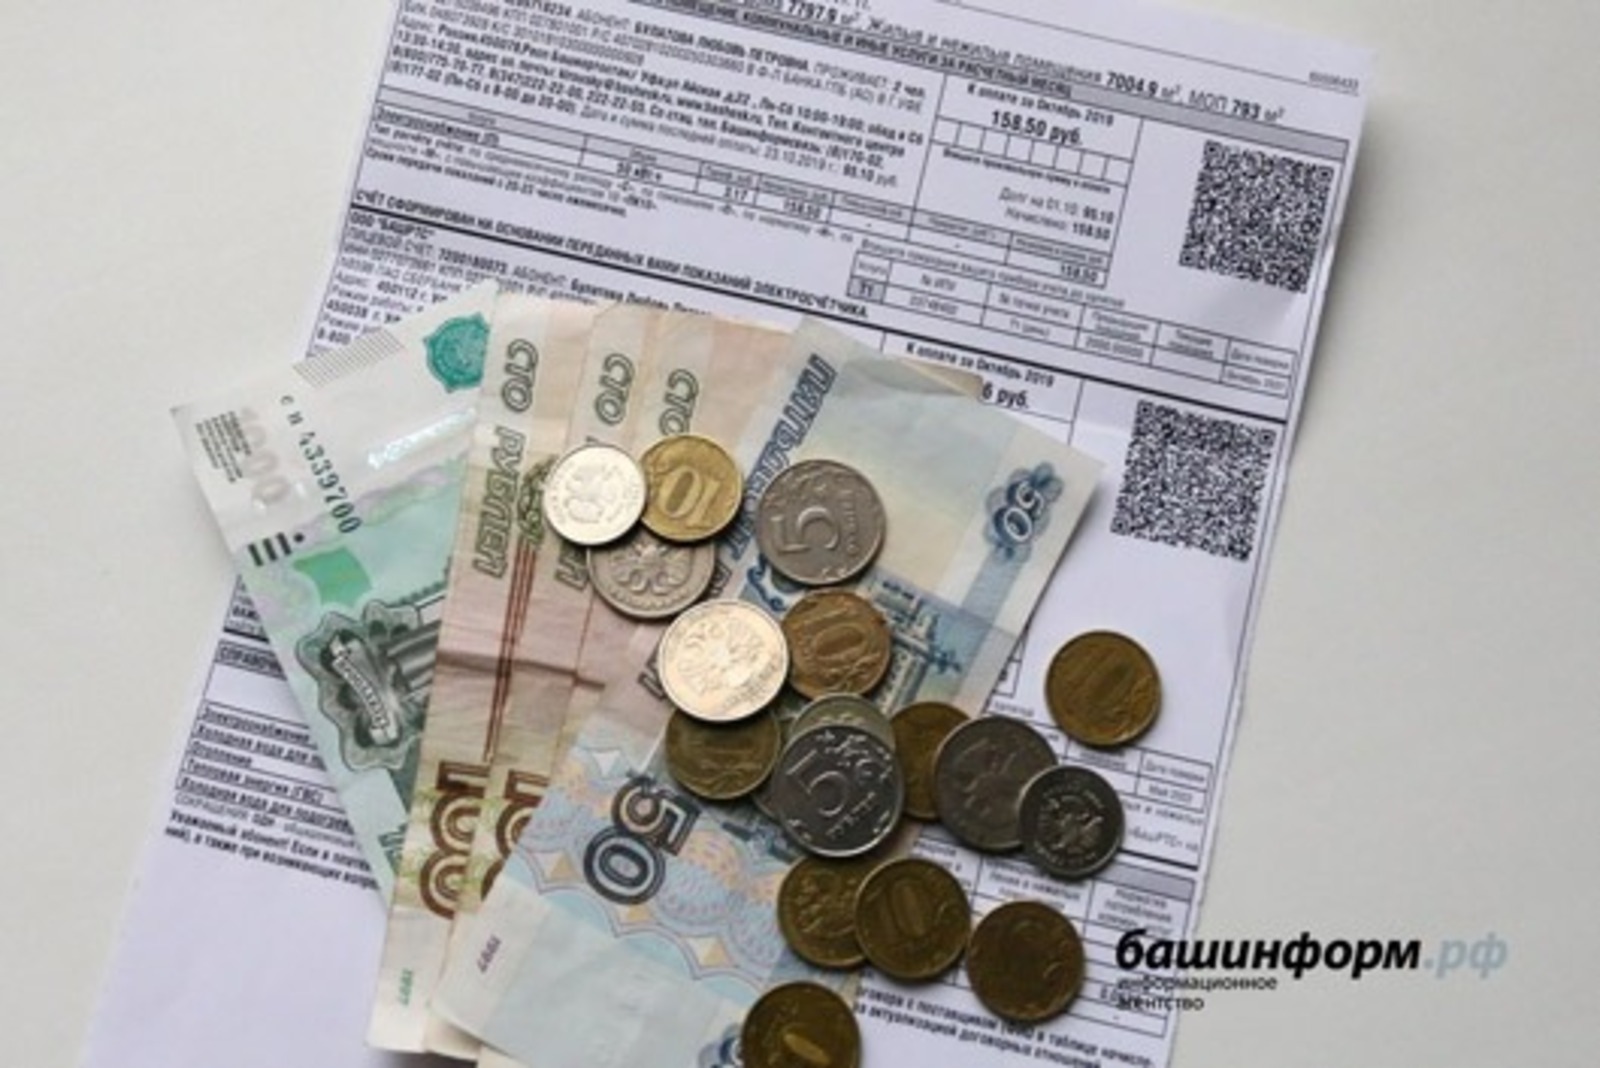 Владимир Путин: о росте цен на яйца и освобождении пенсионеров от банковской комиссии при оплате ЖКХ